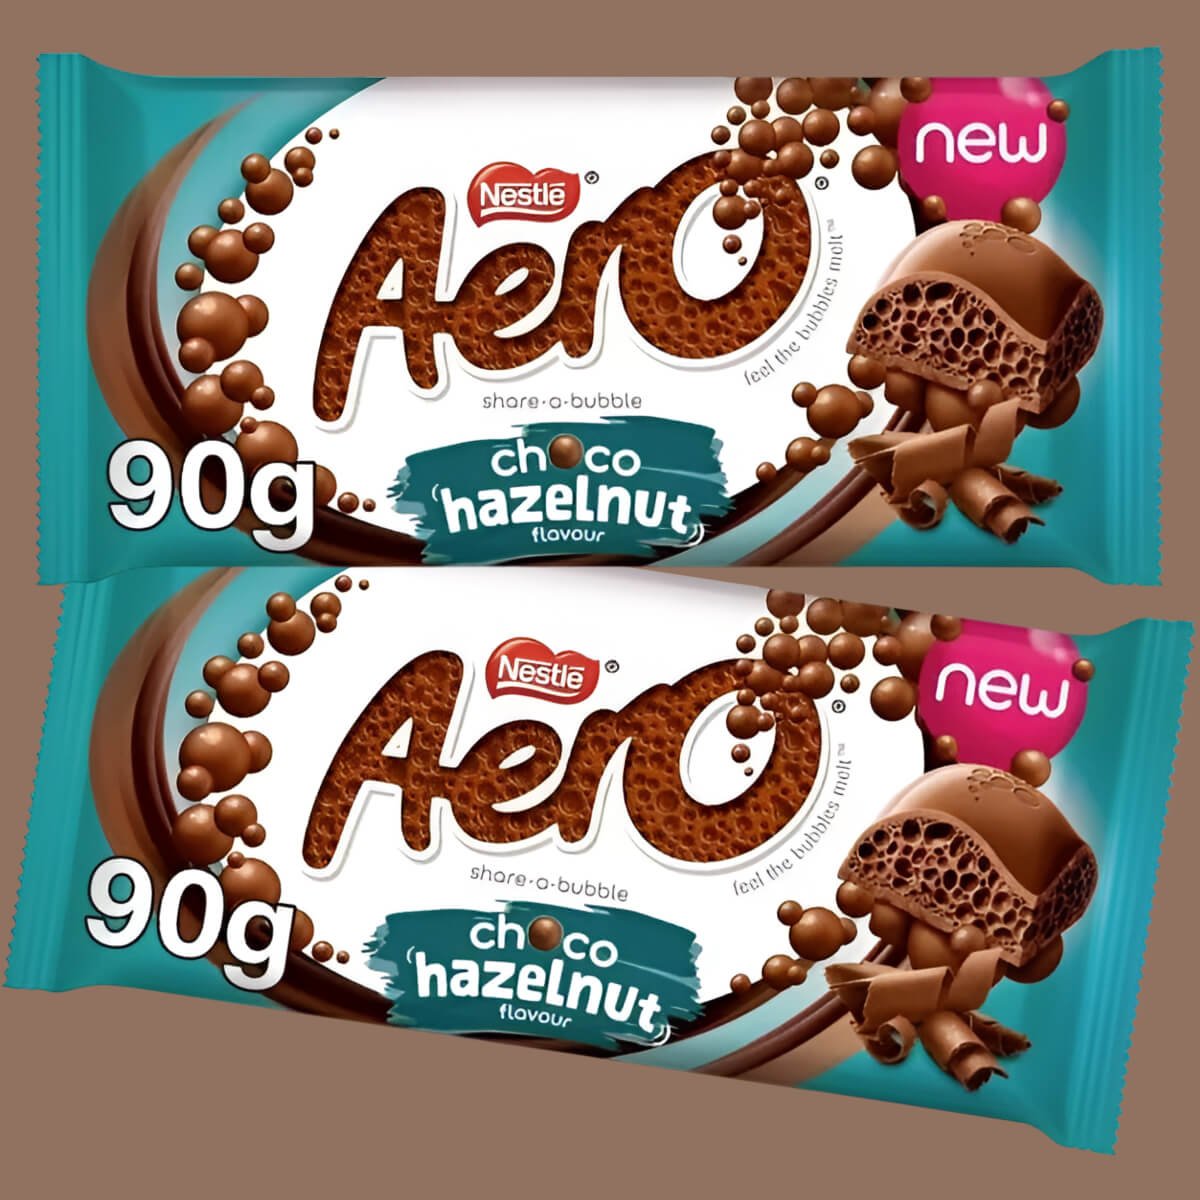 Two 90g bars of Nestle Aero Choco Hazelnut